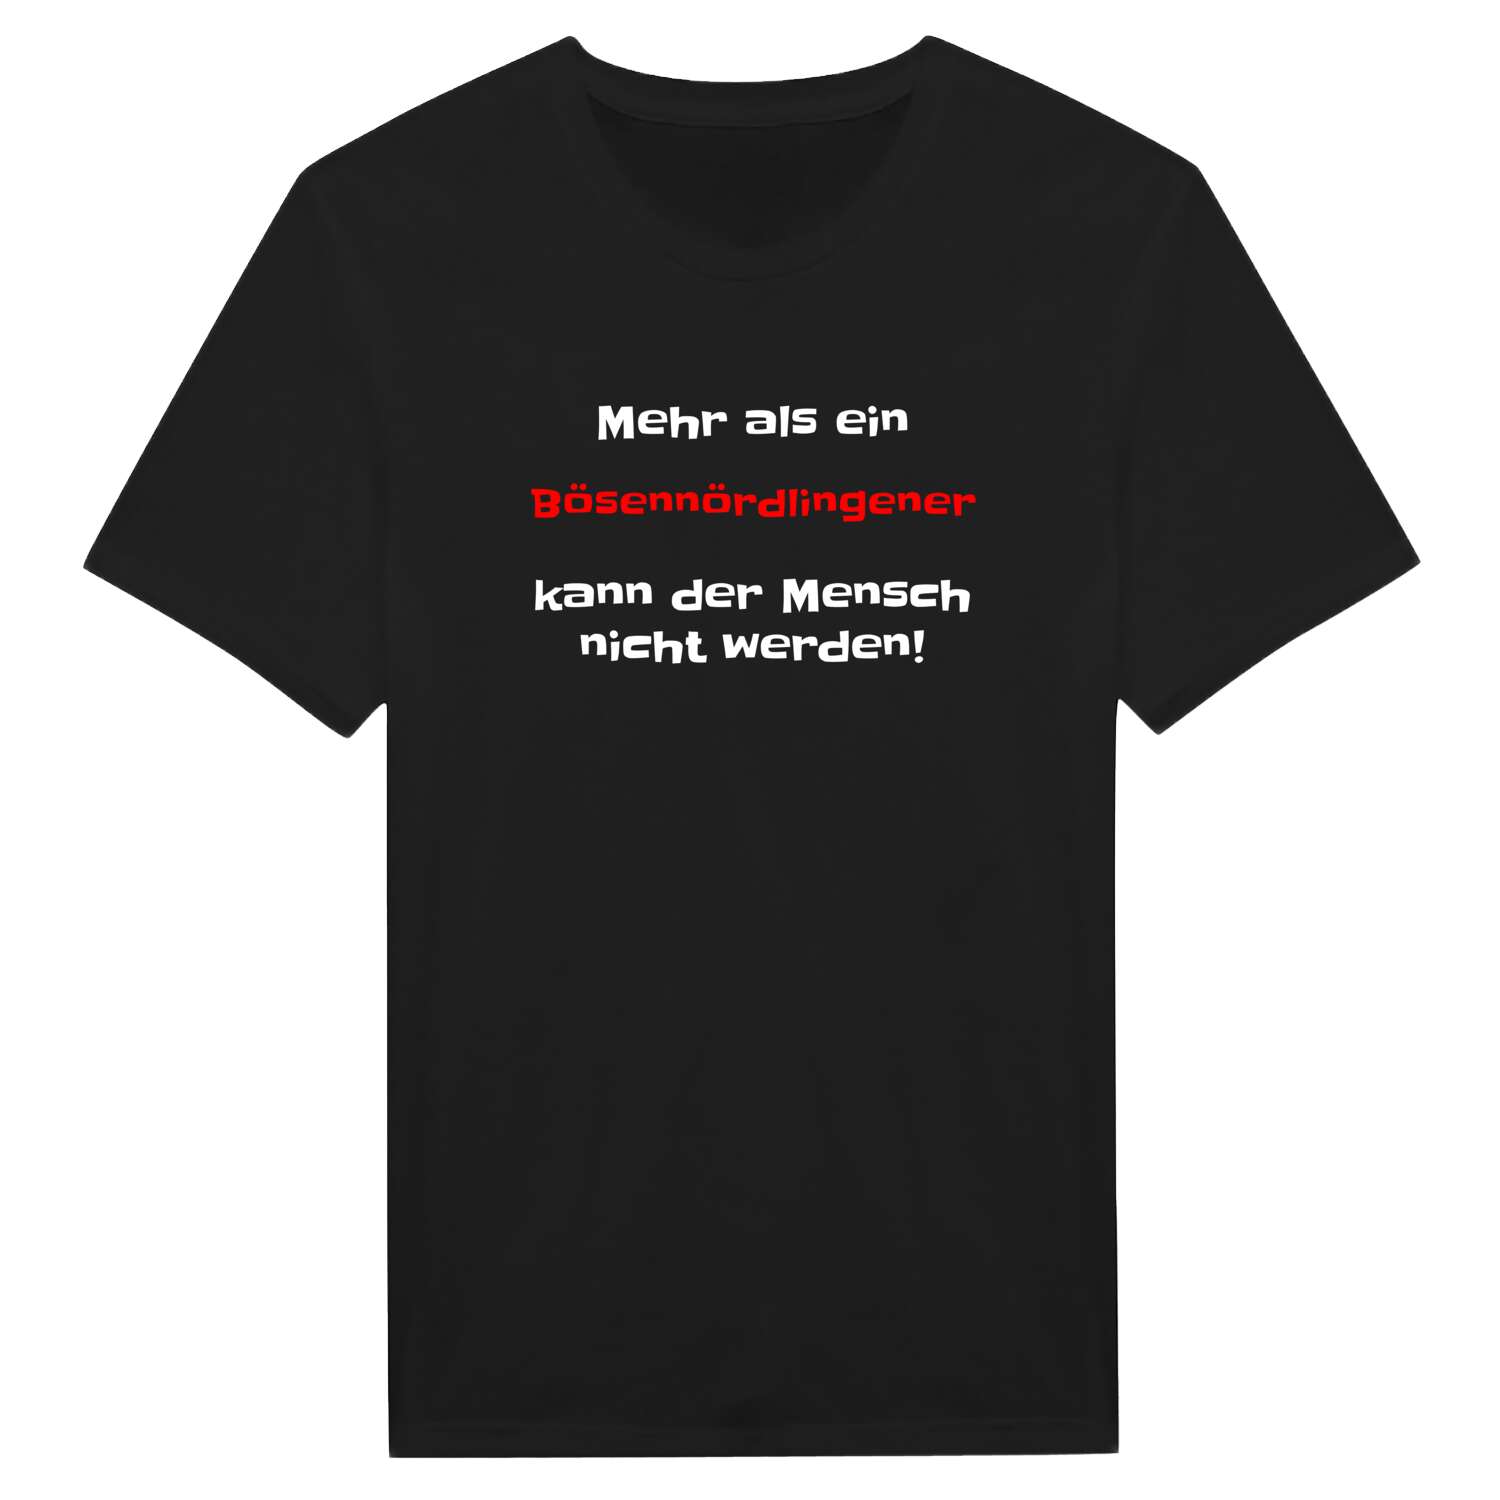 Bösennördlingen T-Shirt »Mehr als ein«